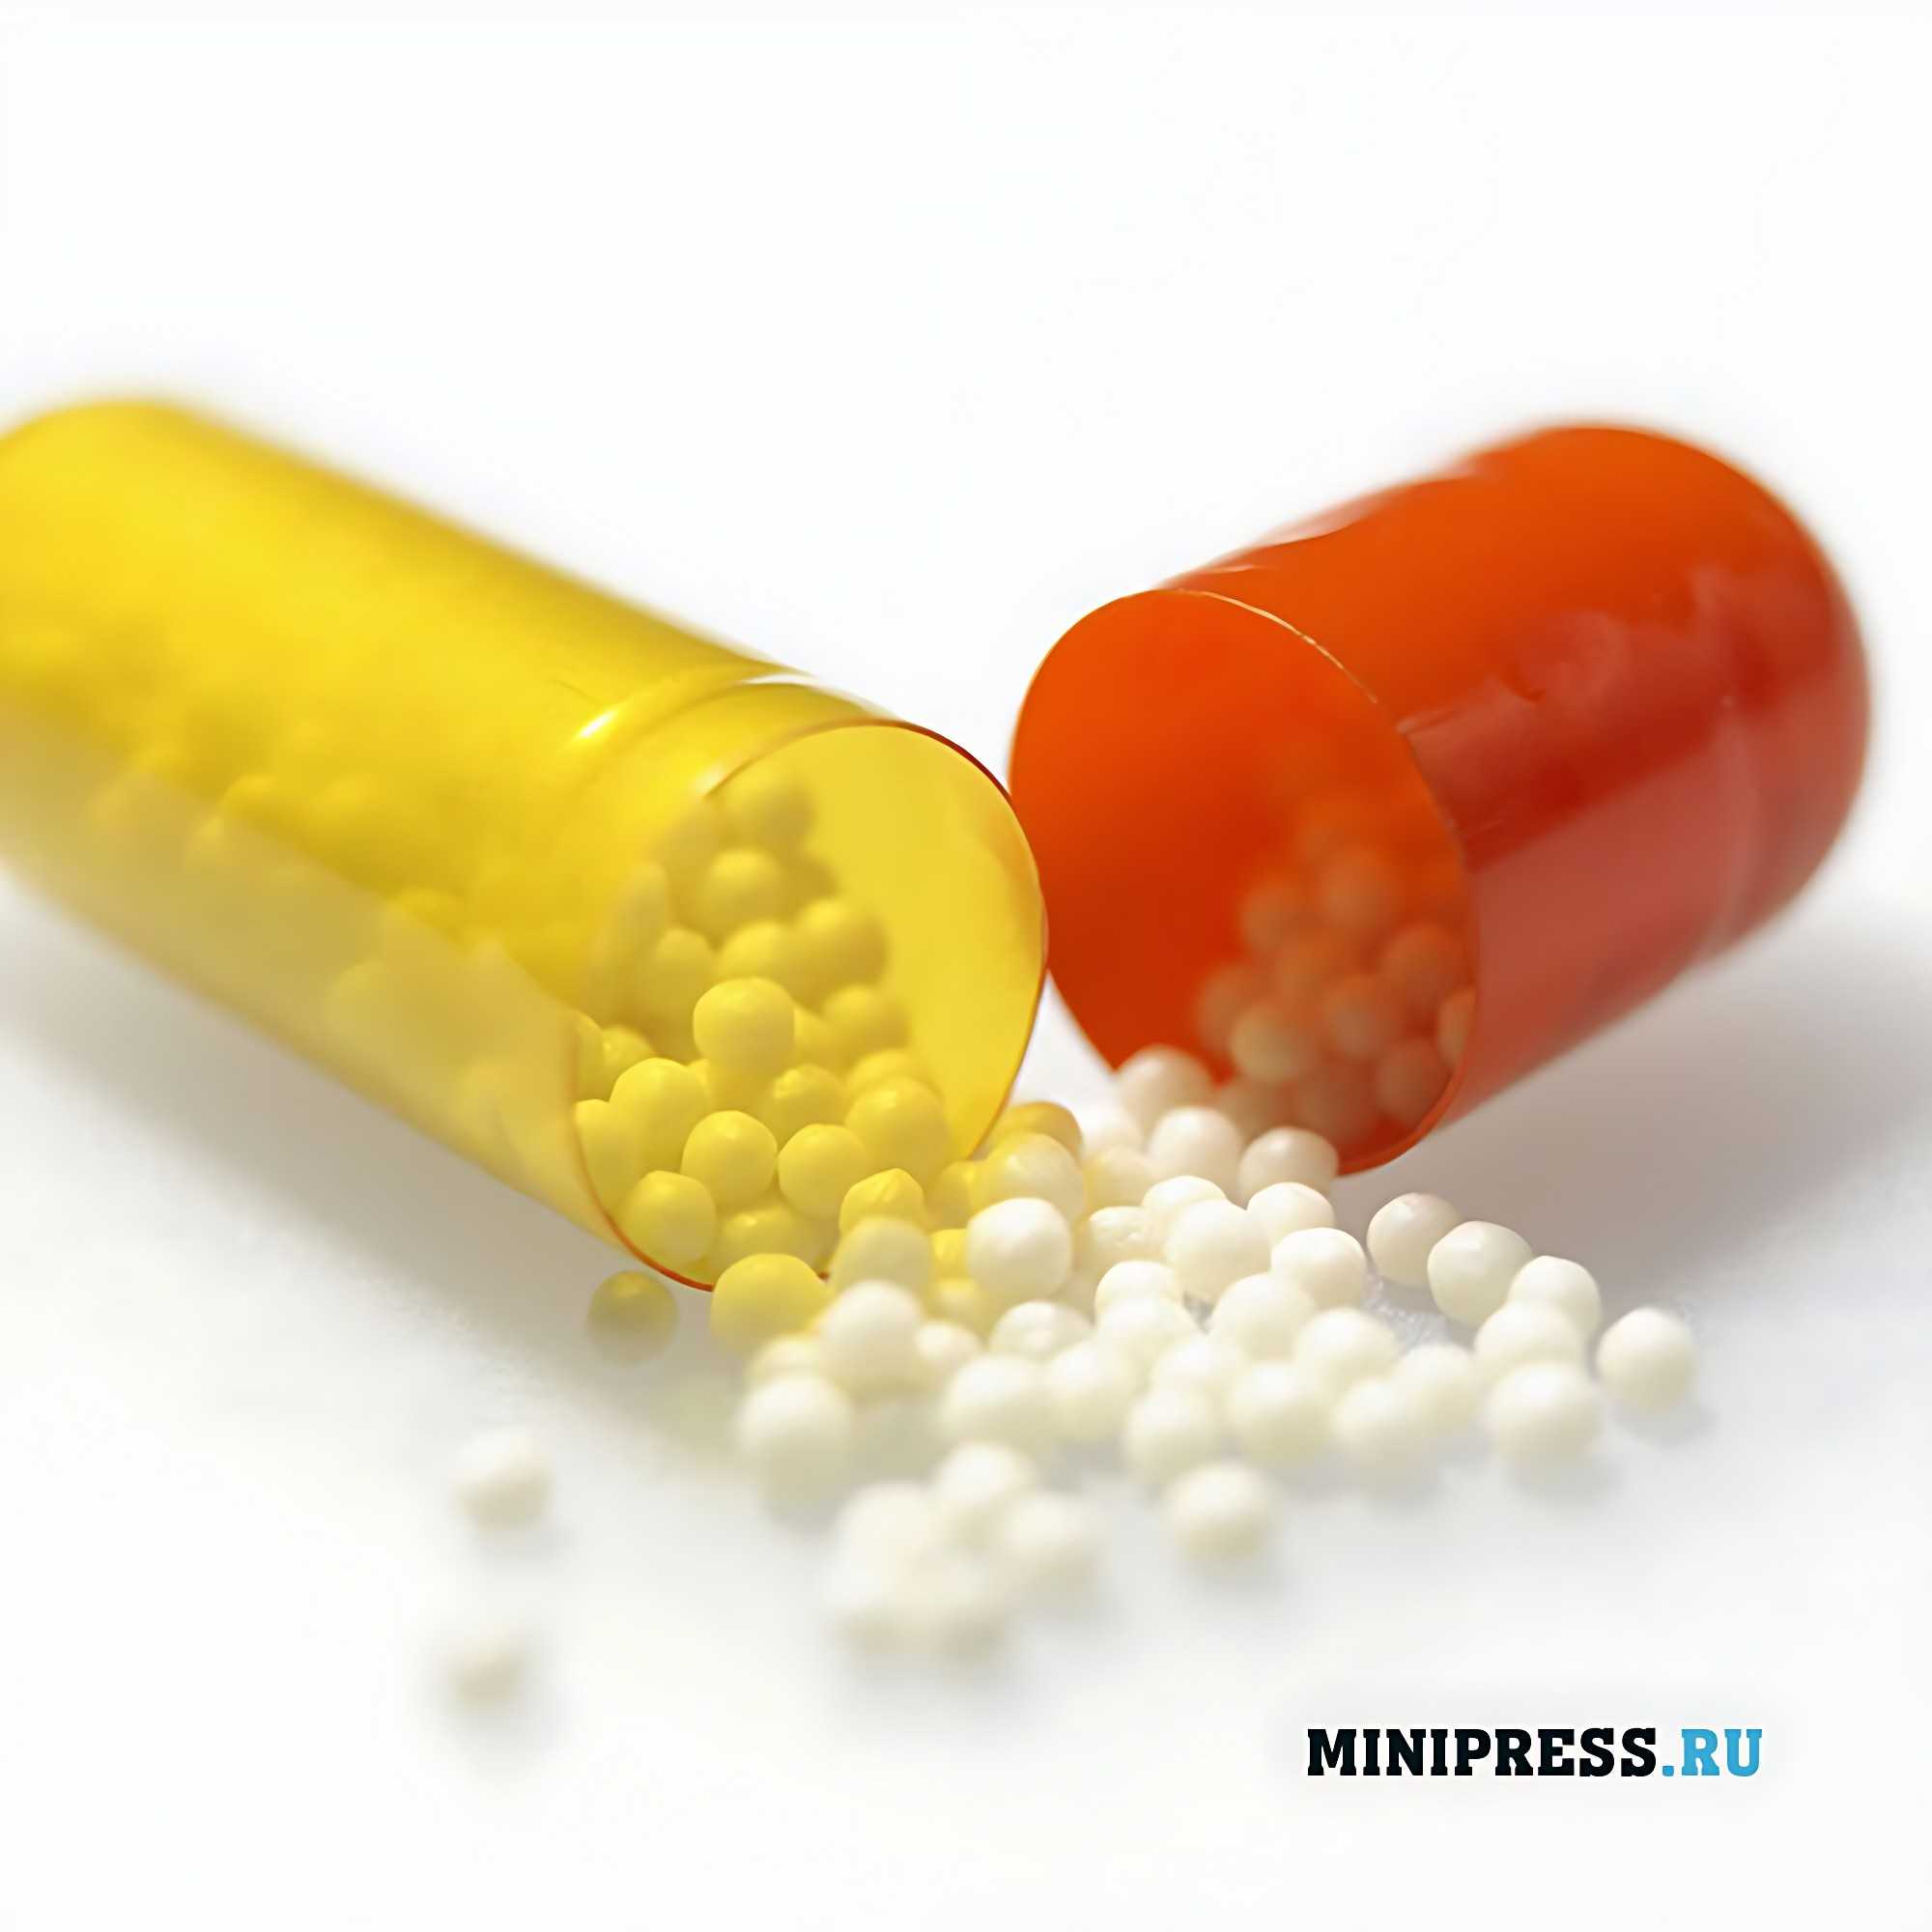 pharmaceutical pellets